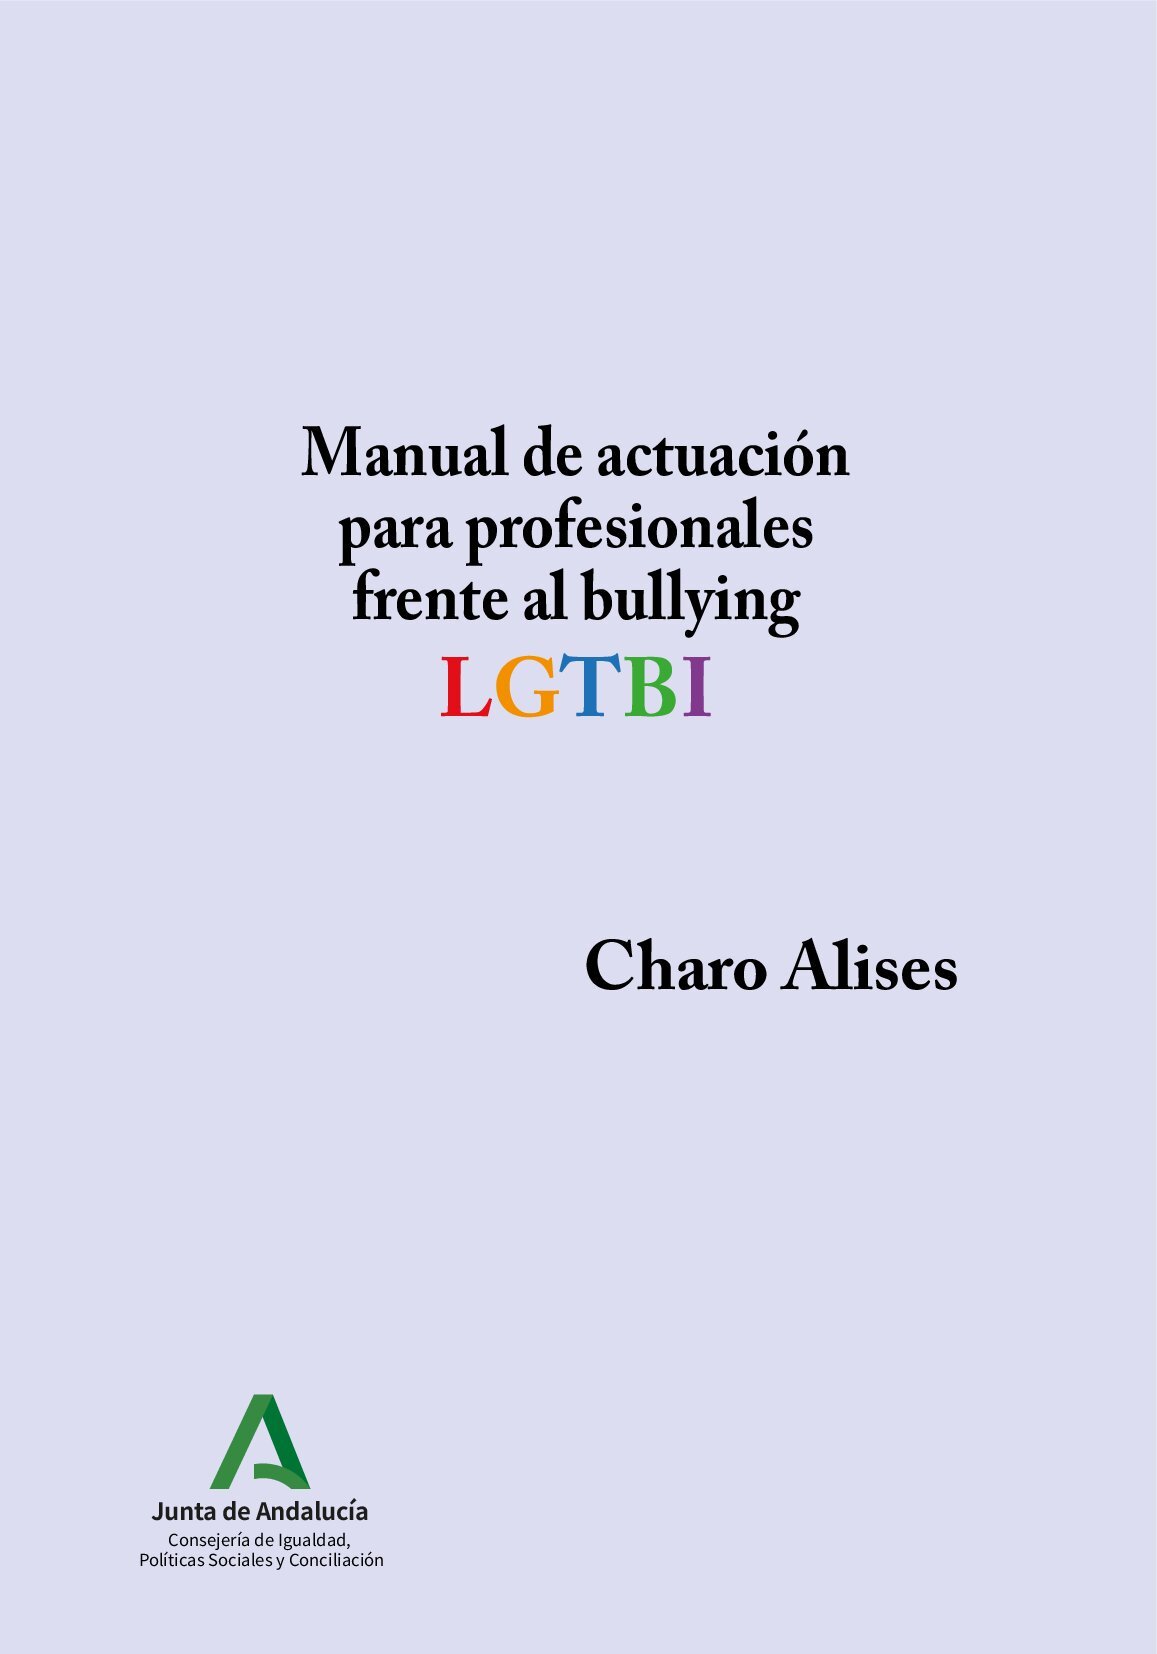 Manual de actuación para profesionales frente al bullying LGTBI